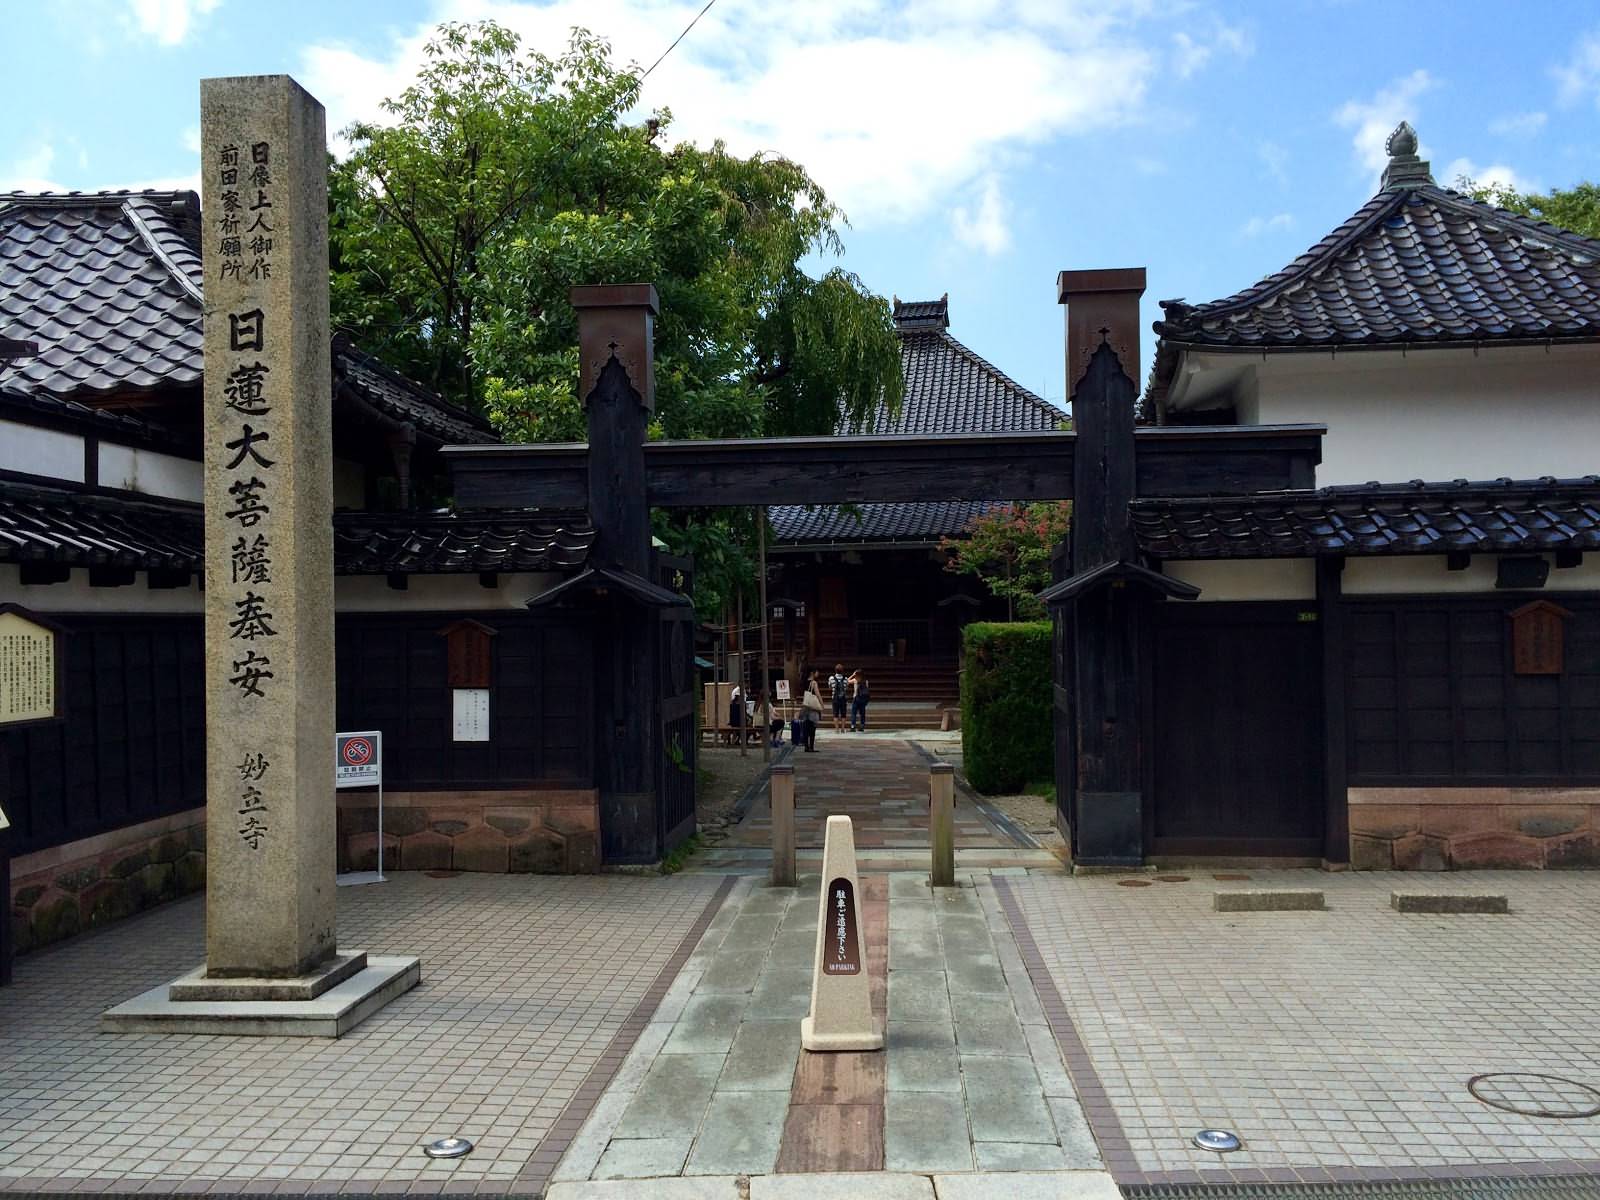 Myoryuji - Ninja Temple